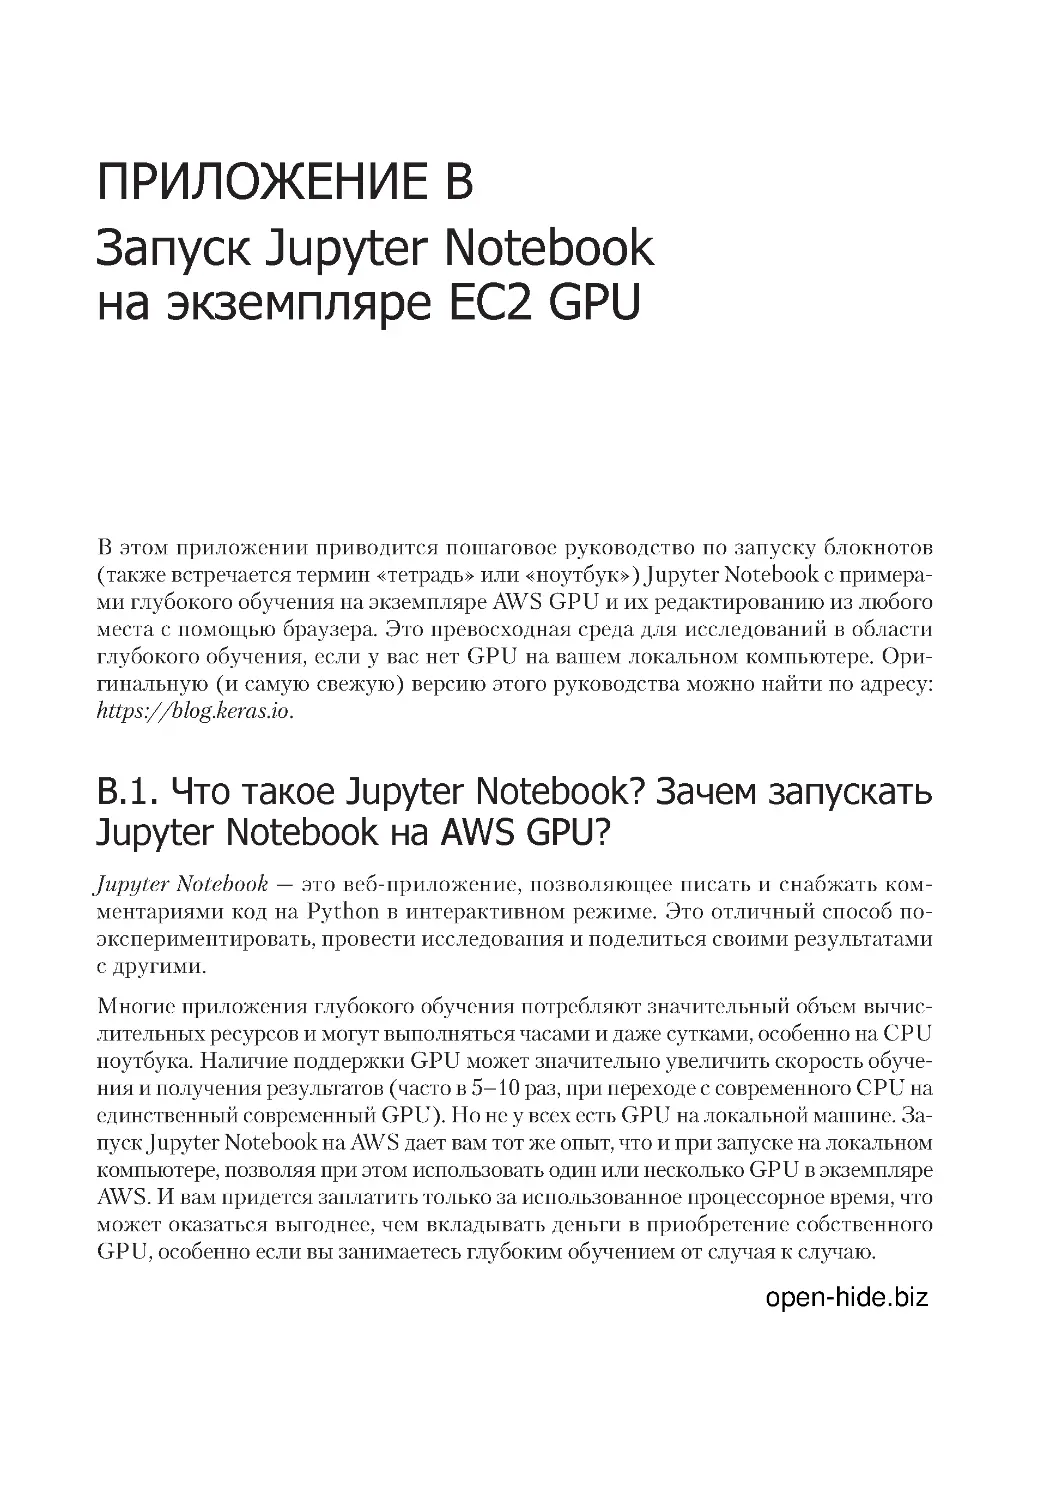 ﻿Приложение B 
Запуск Jupyter Notebook на экземпляре EC2 GP